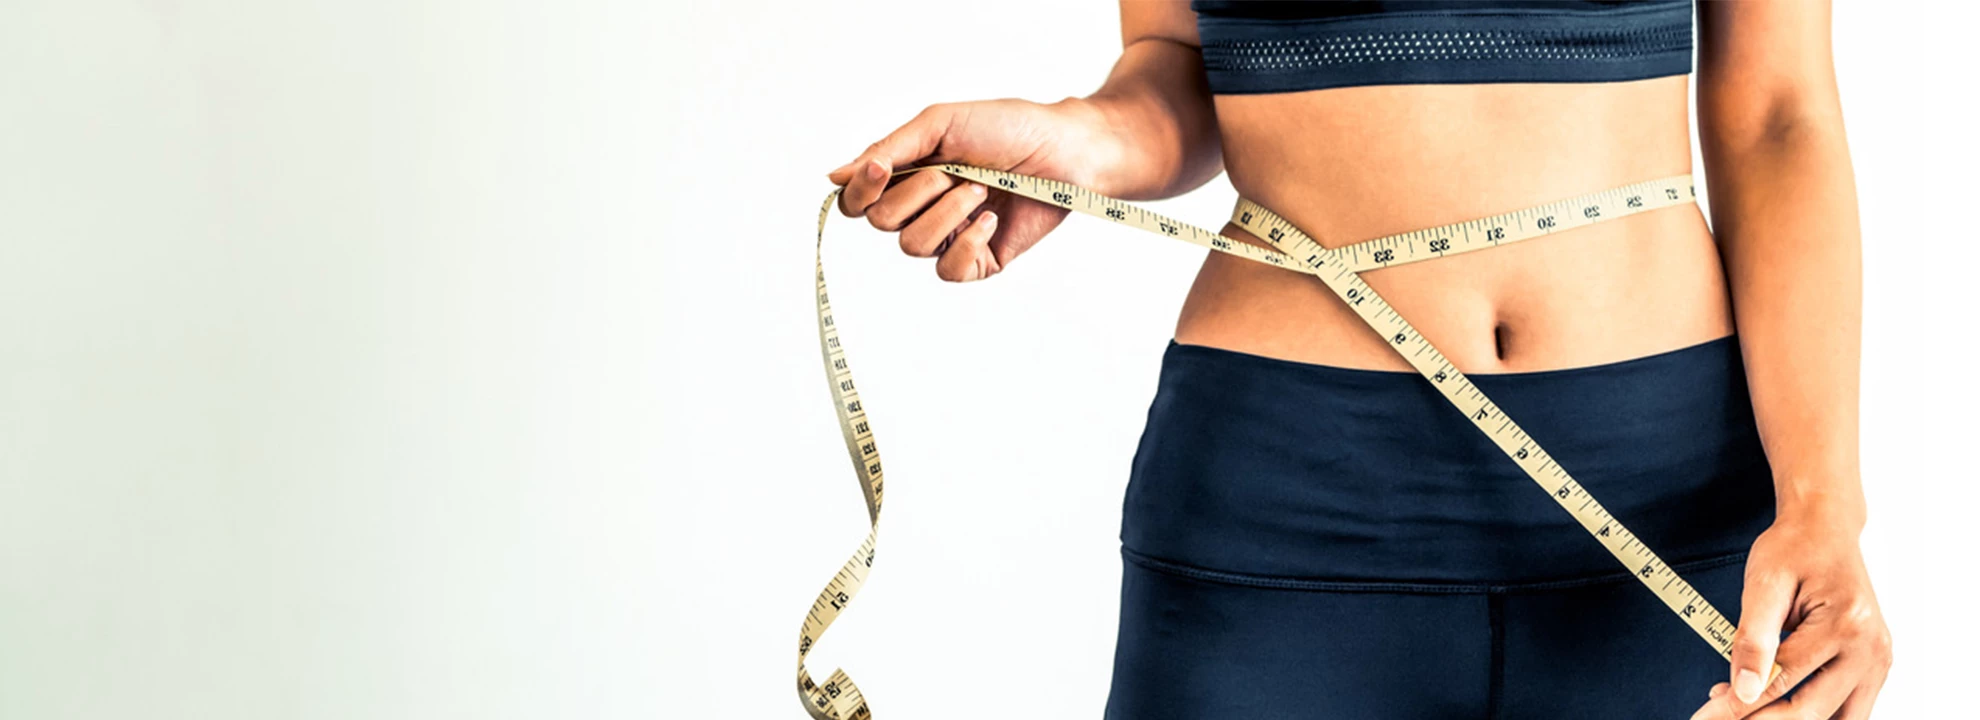 Le CLA aide à perdre du gras et du poids ?